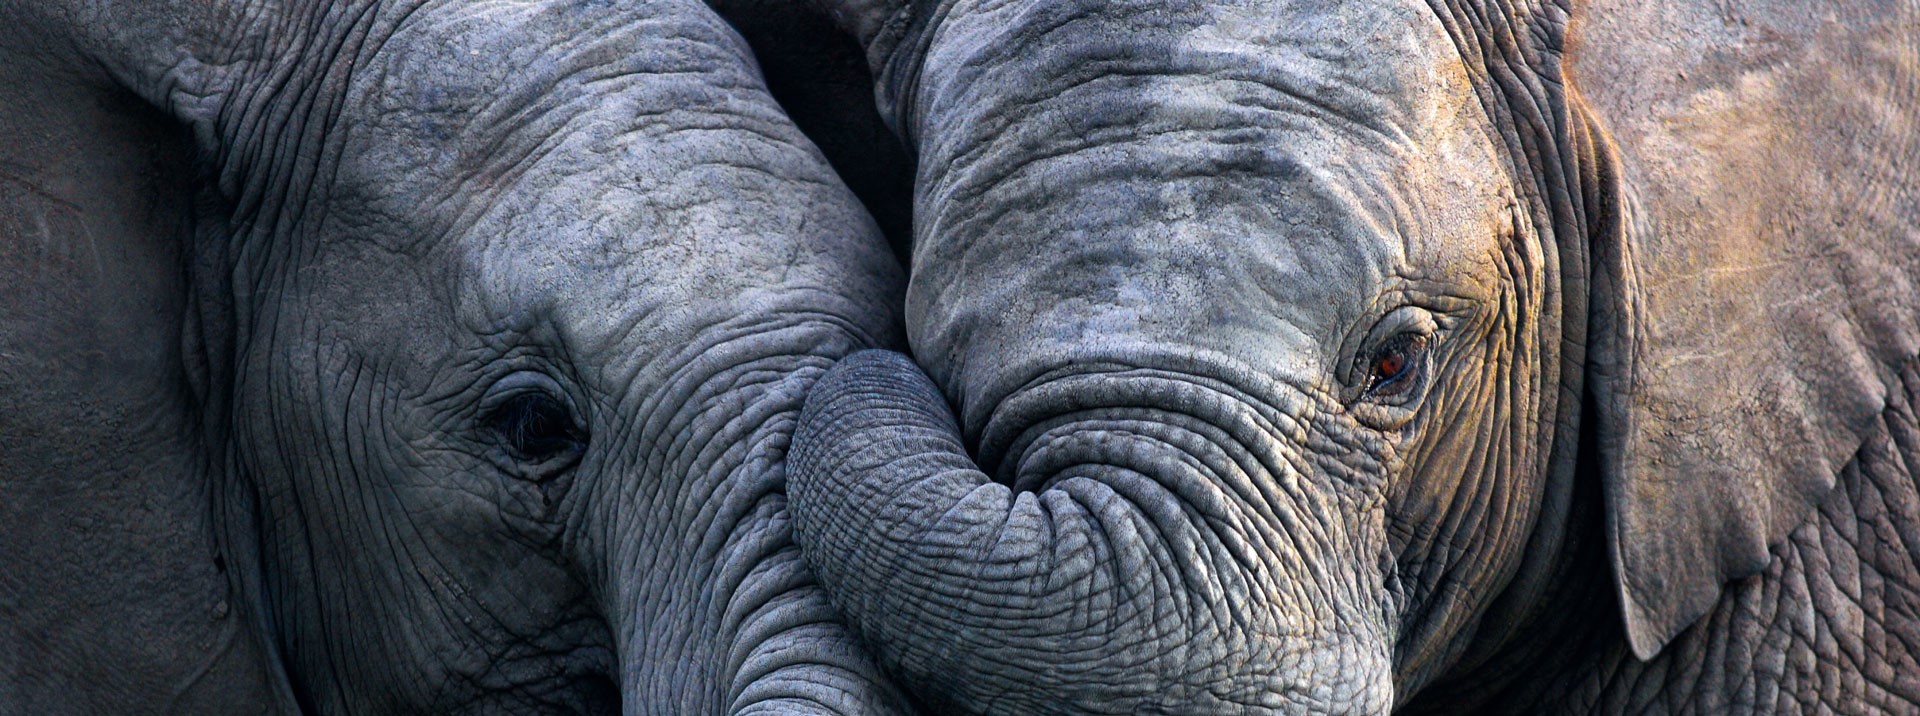 2 Elefanten kuscheln. Ein Symbol, dass es die Schiller Apotheke 2 x gibt.